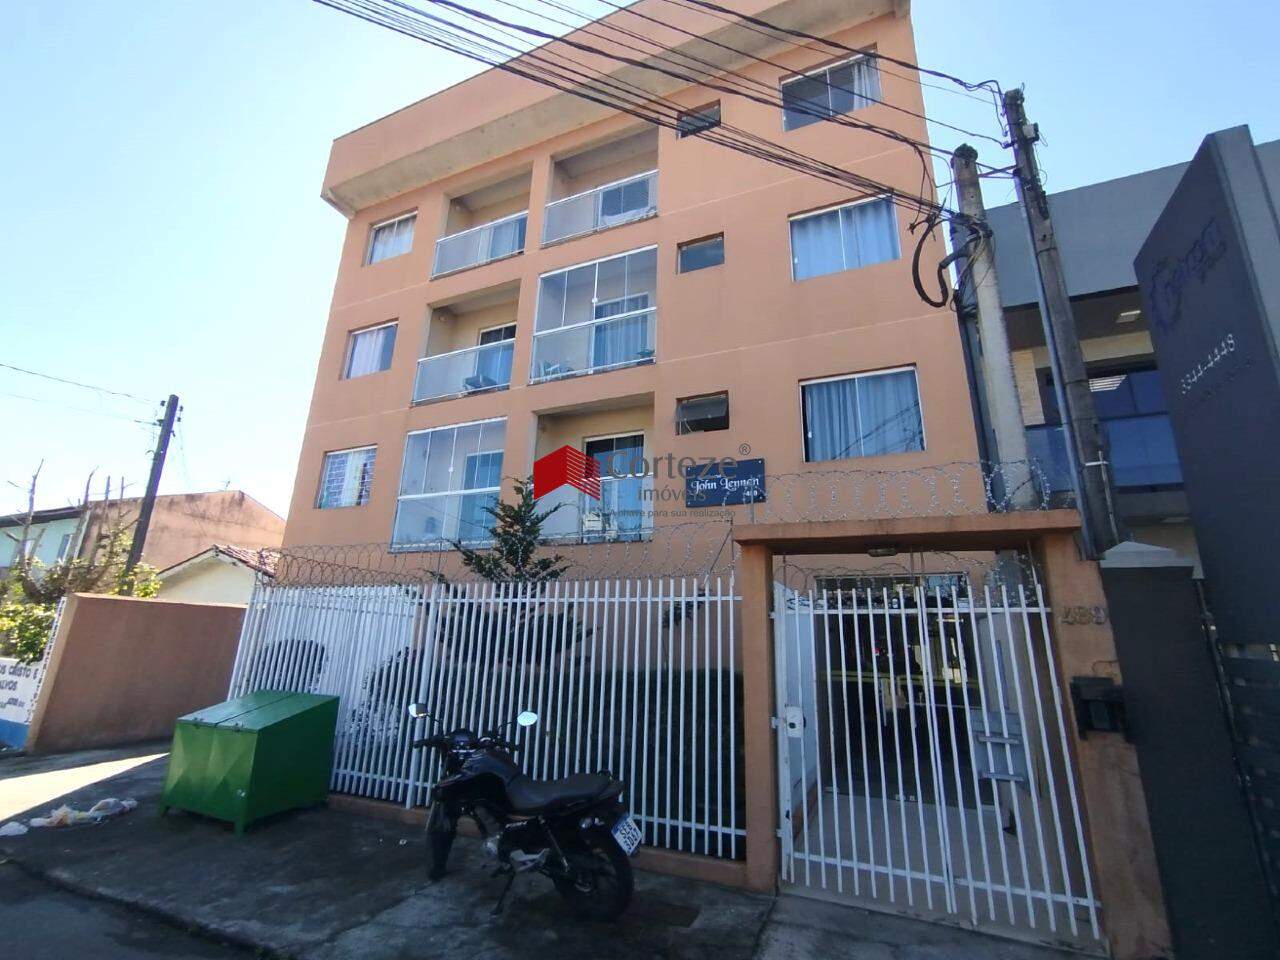 Apartamento semi mobiliado, para locação de 3 quartos, localizado no bairro Parque da Fonte.